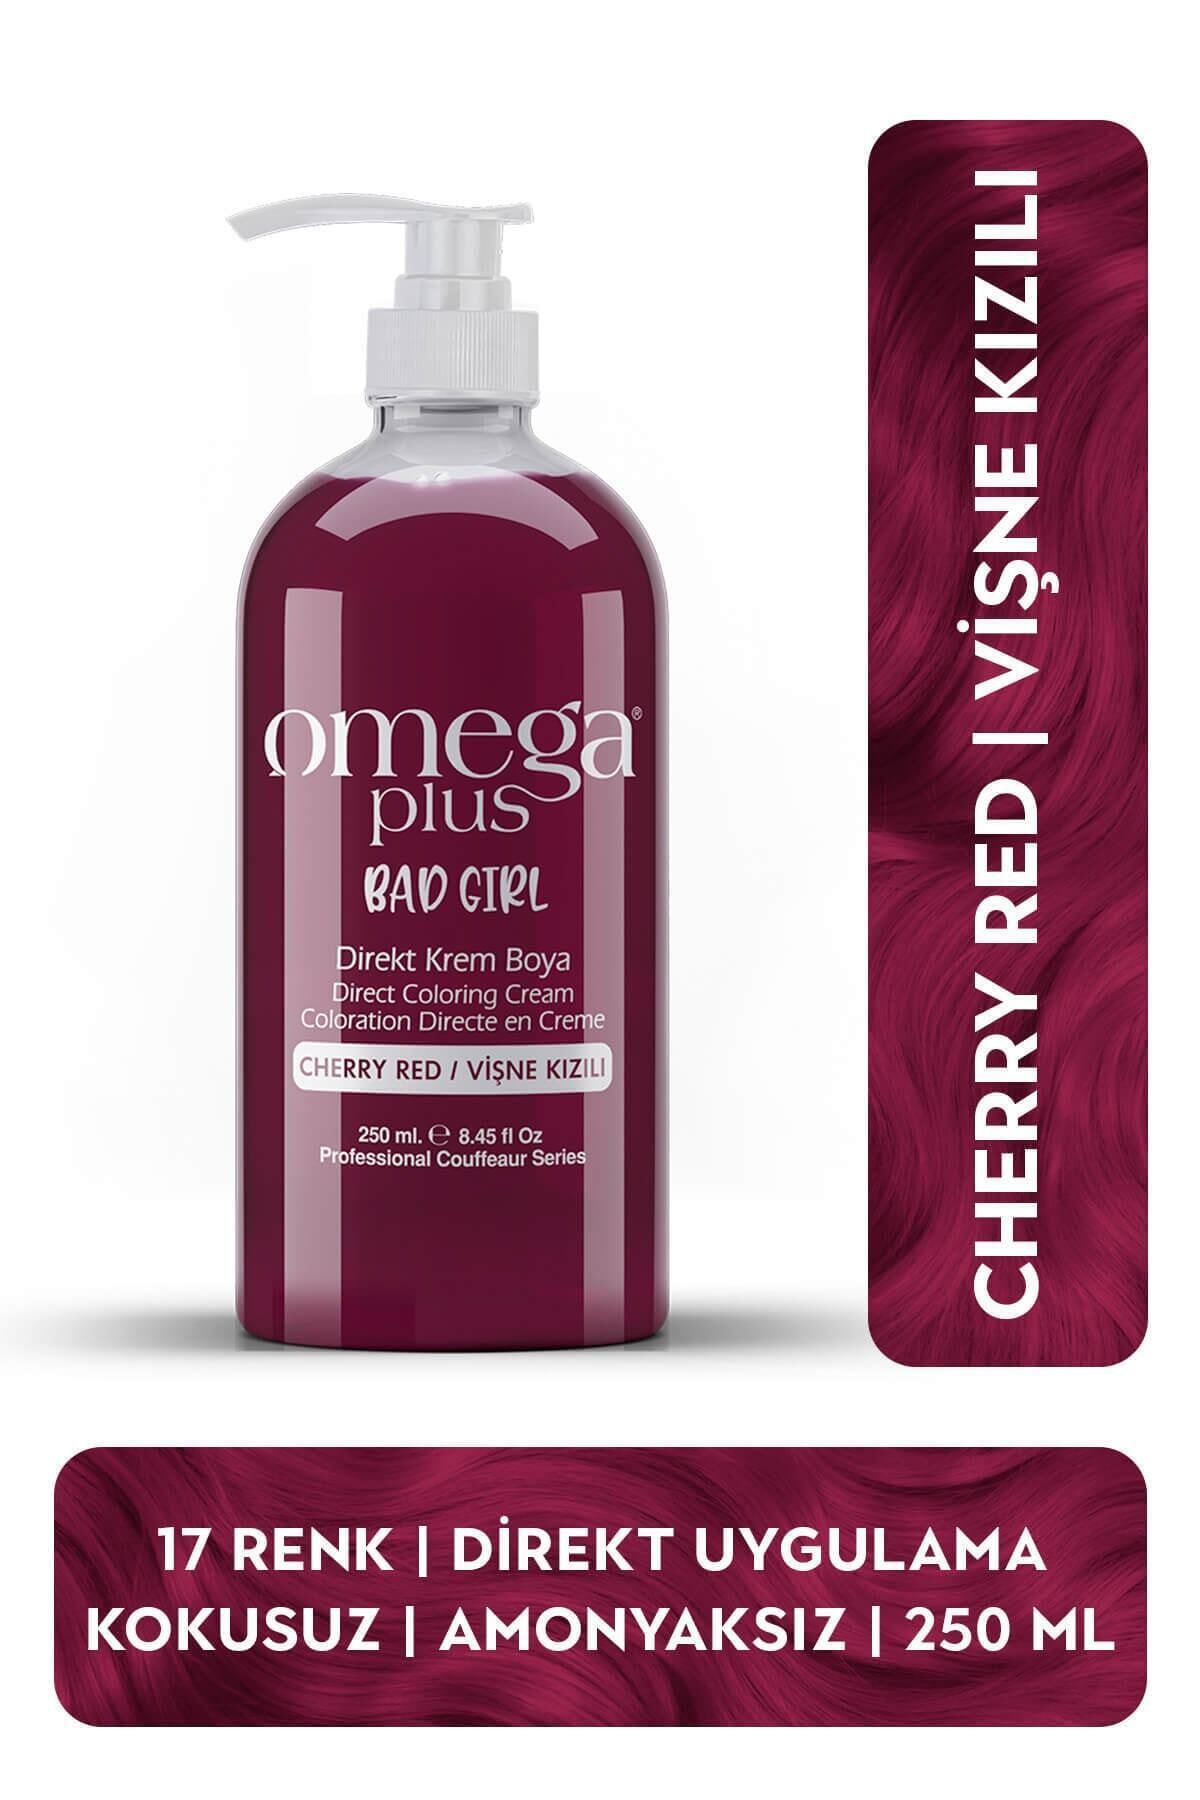 Omega Plus Bad Girl Vişne Kızılı Amonyaksız Renkli Saç Boyası 250ml